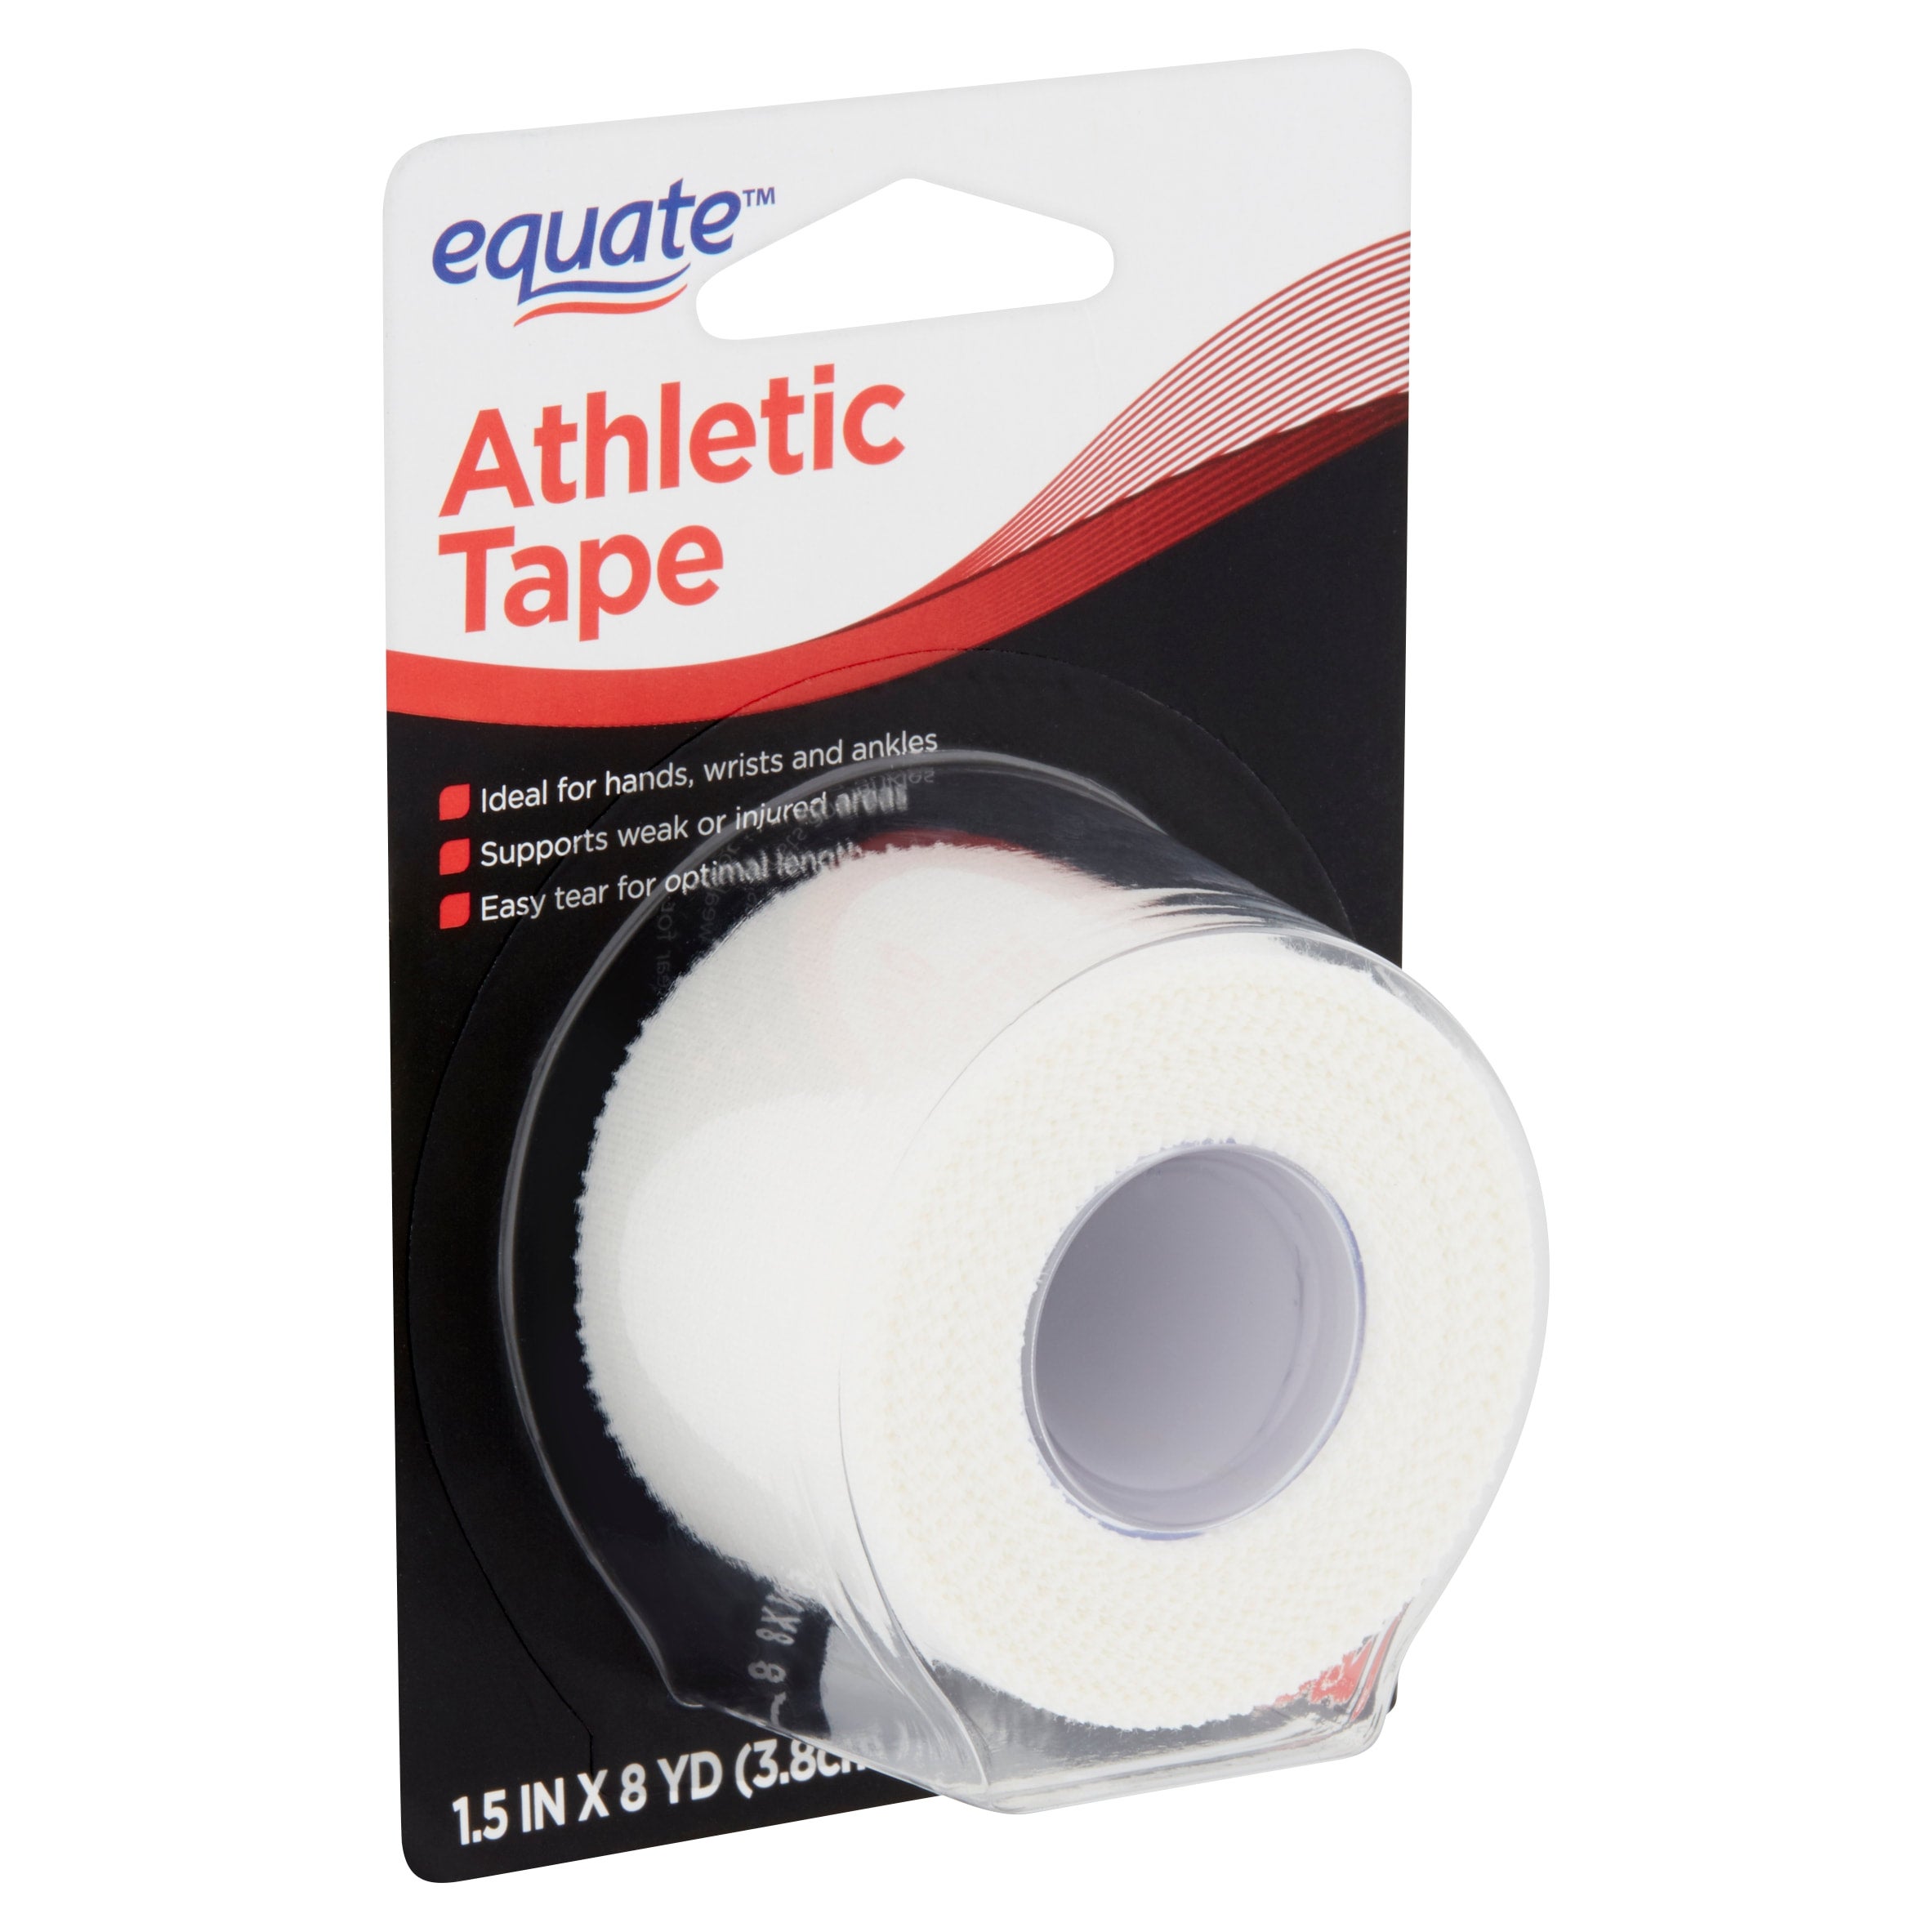 Signature Athletic Tape